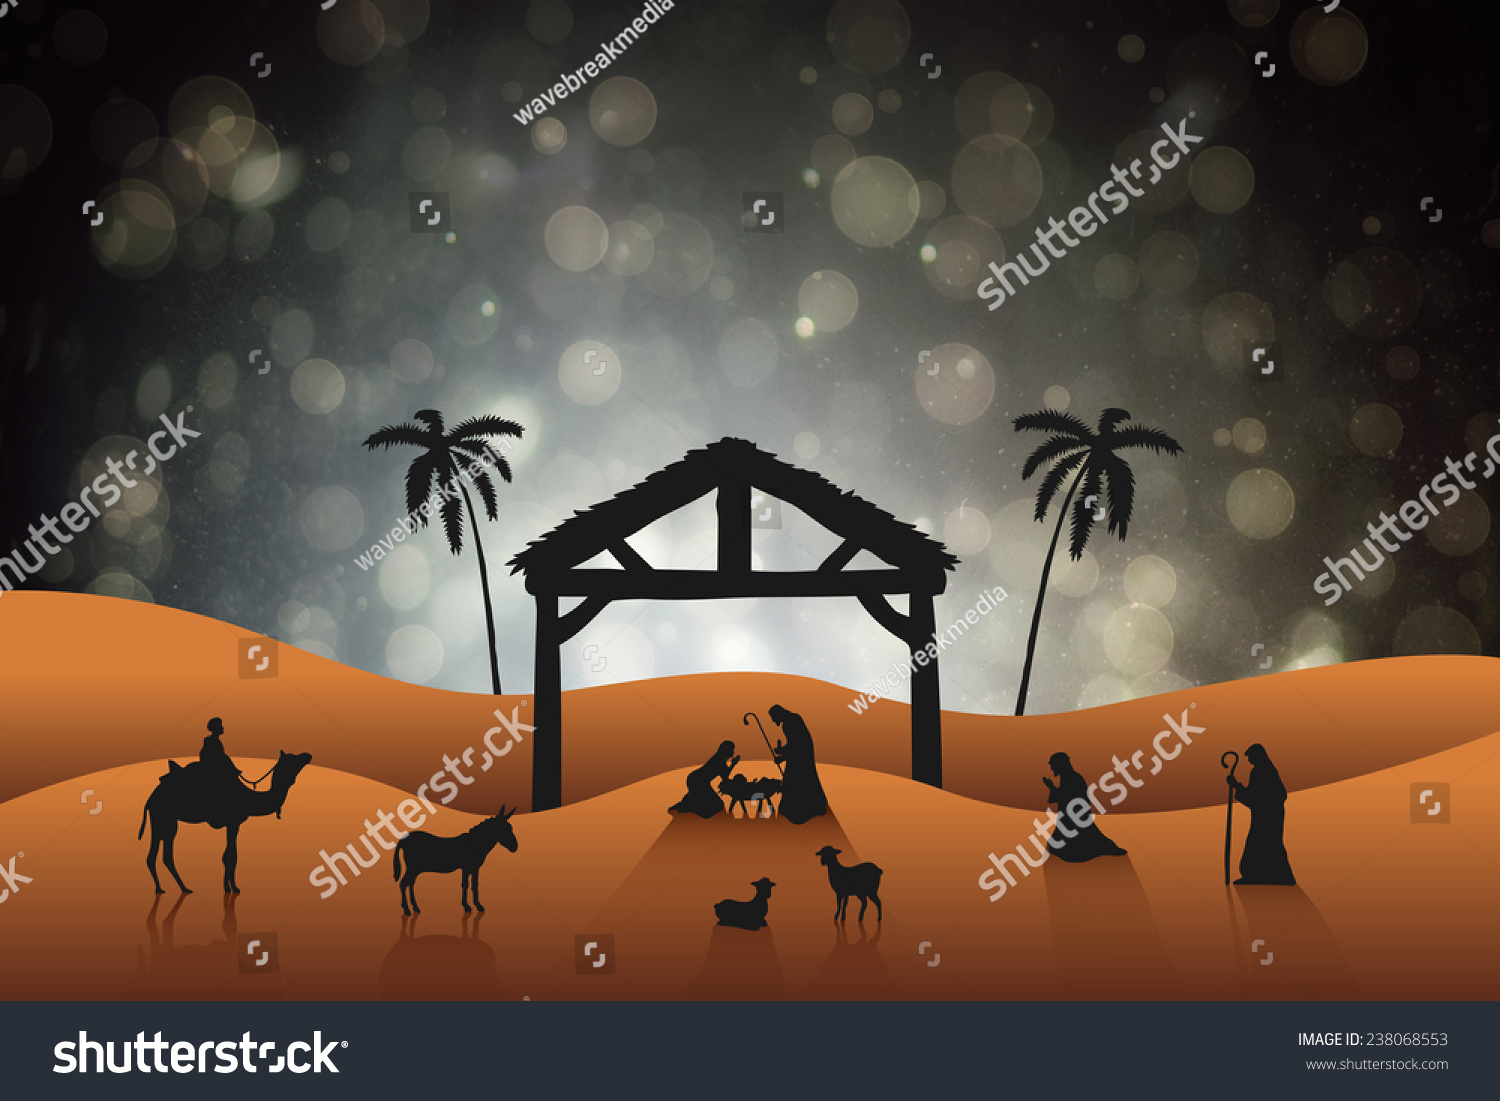 Nativity Scene Against Black Abstract Light Spot Design Stock Photo ...